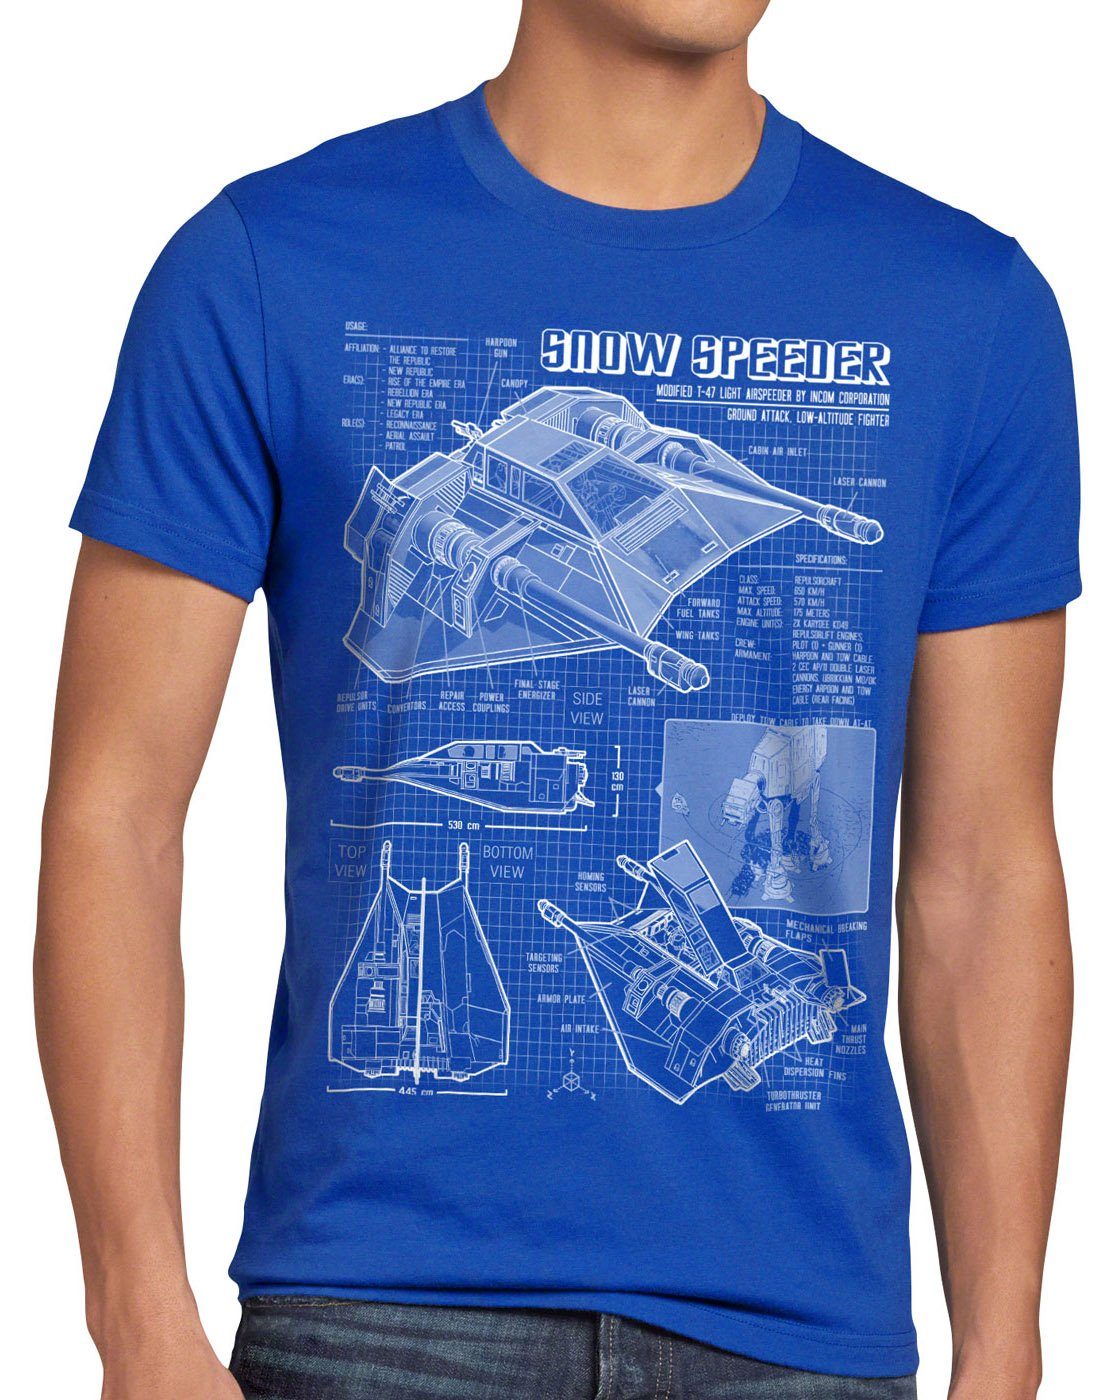 T-Shirt blau der Snow imperium style3 air krieg star Speeder wars Herren Print-Shirt T-47 sterne hoth